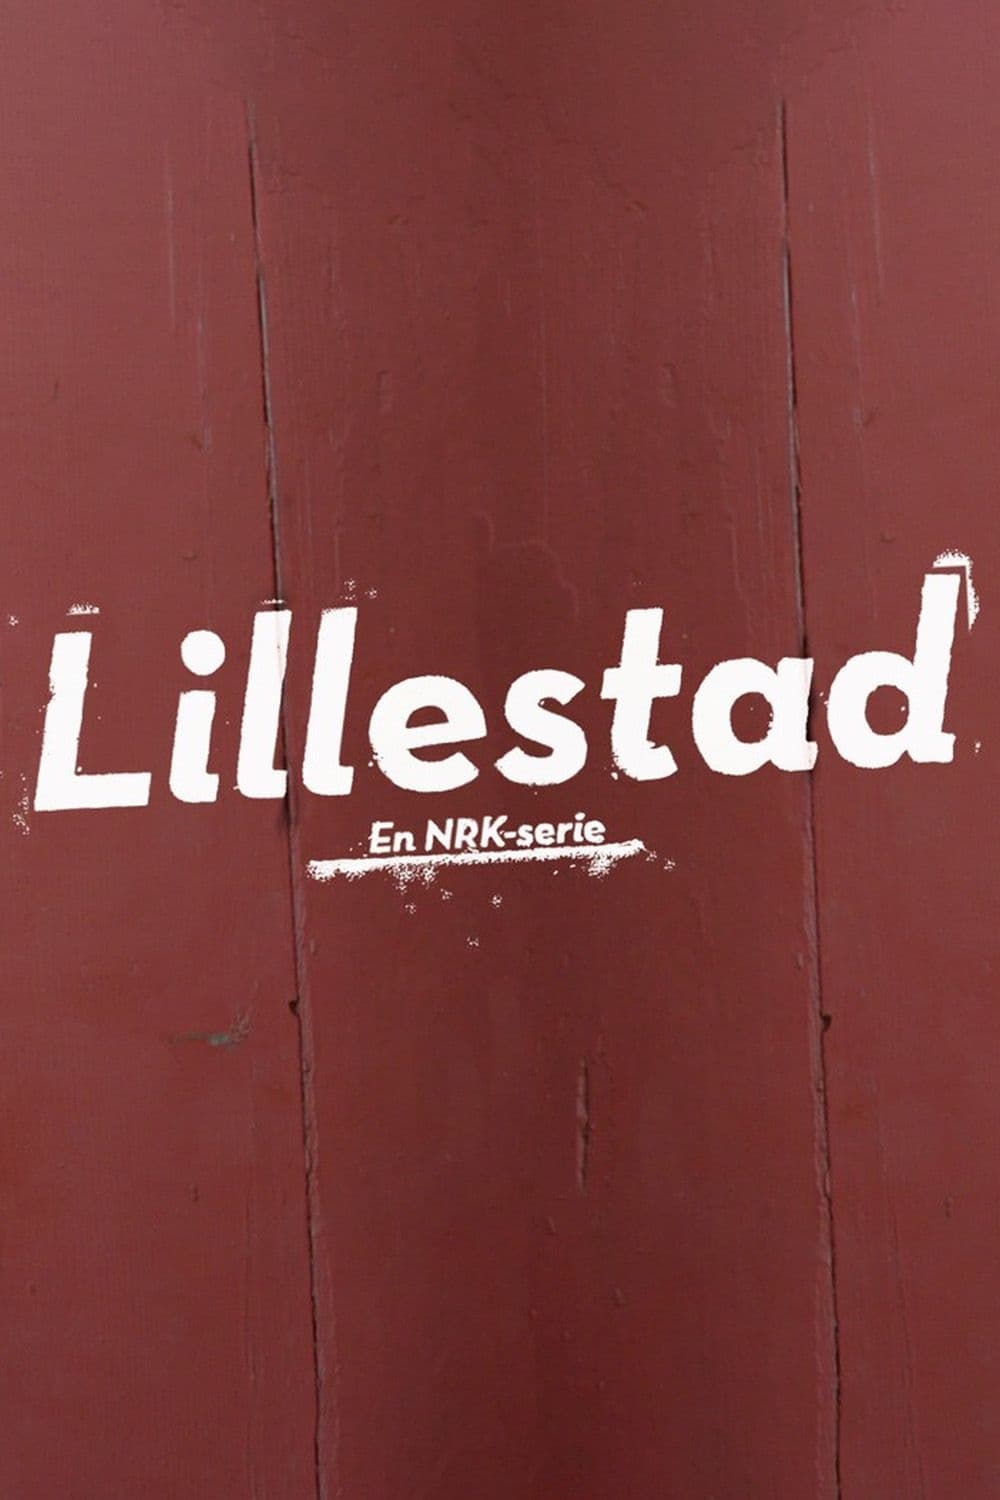 Lillestad